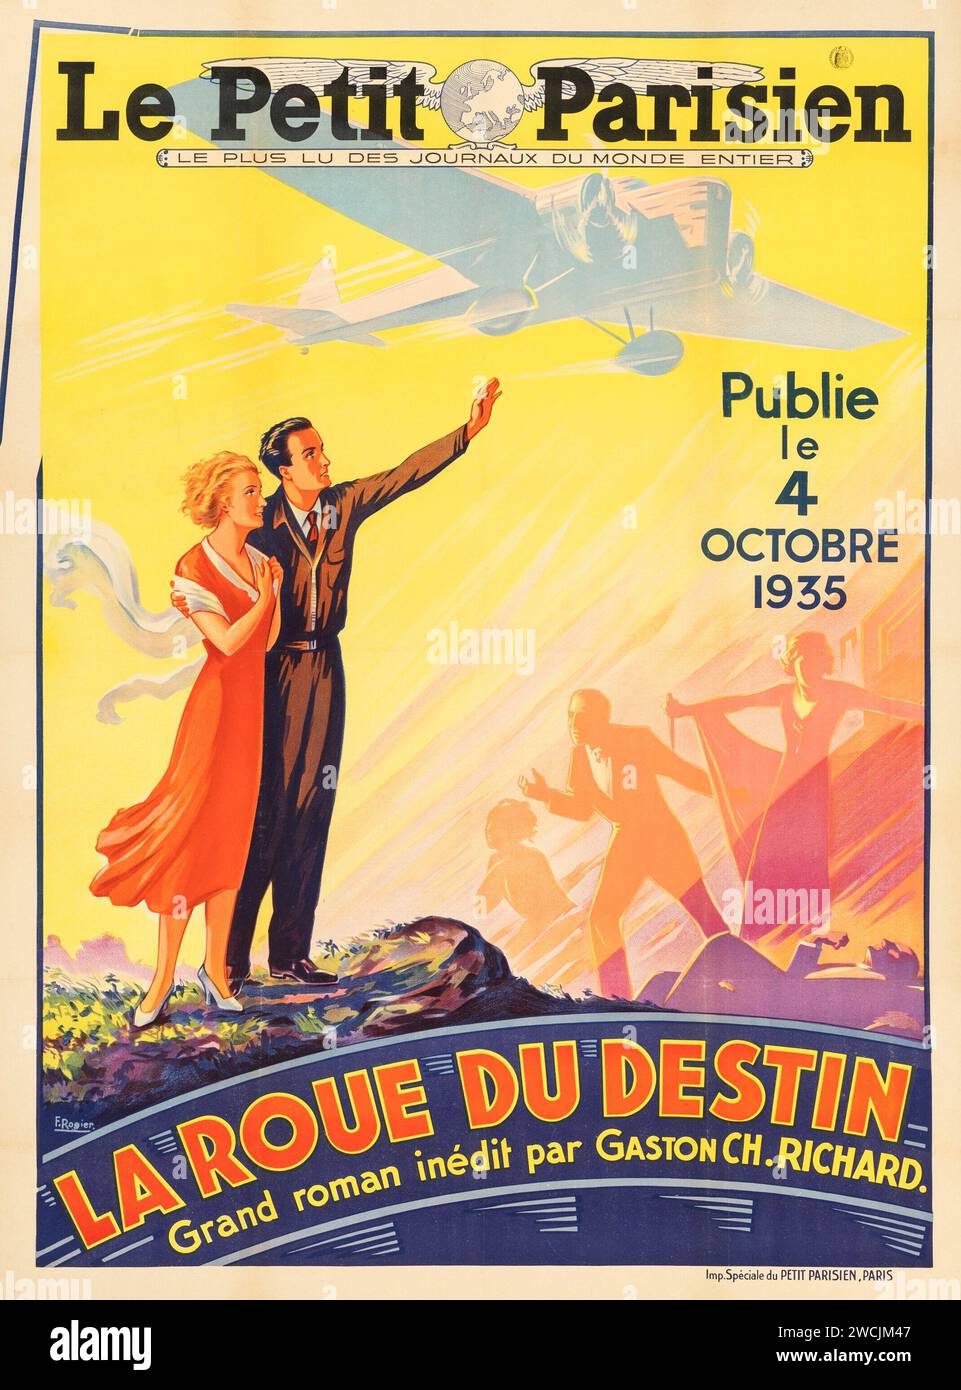 La roue du destin de Gaston-Charles Richard (le petit parisien, 1935) affiche publicitaire dans le journal français - F. Rogier oeuvre - Gaston-Charles Richard Banque D'Images